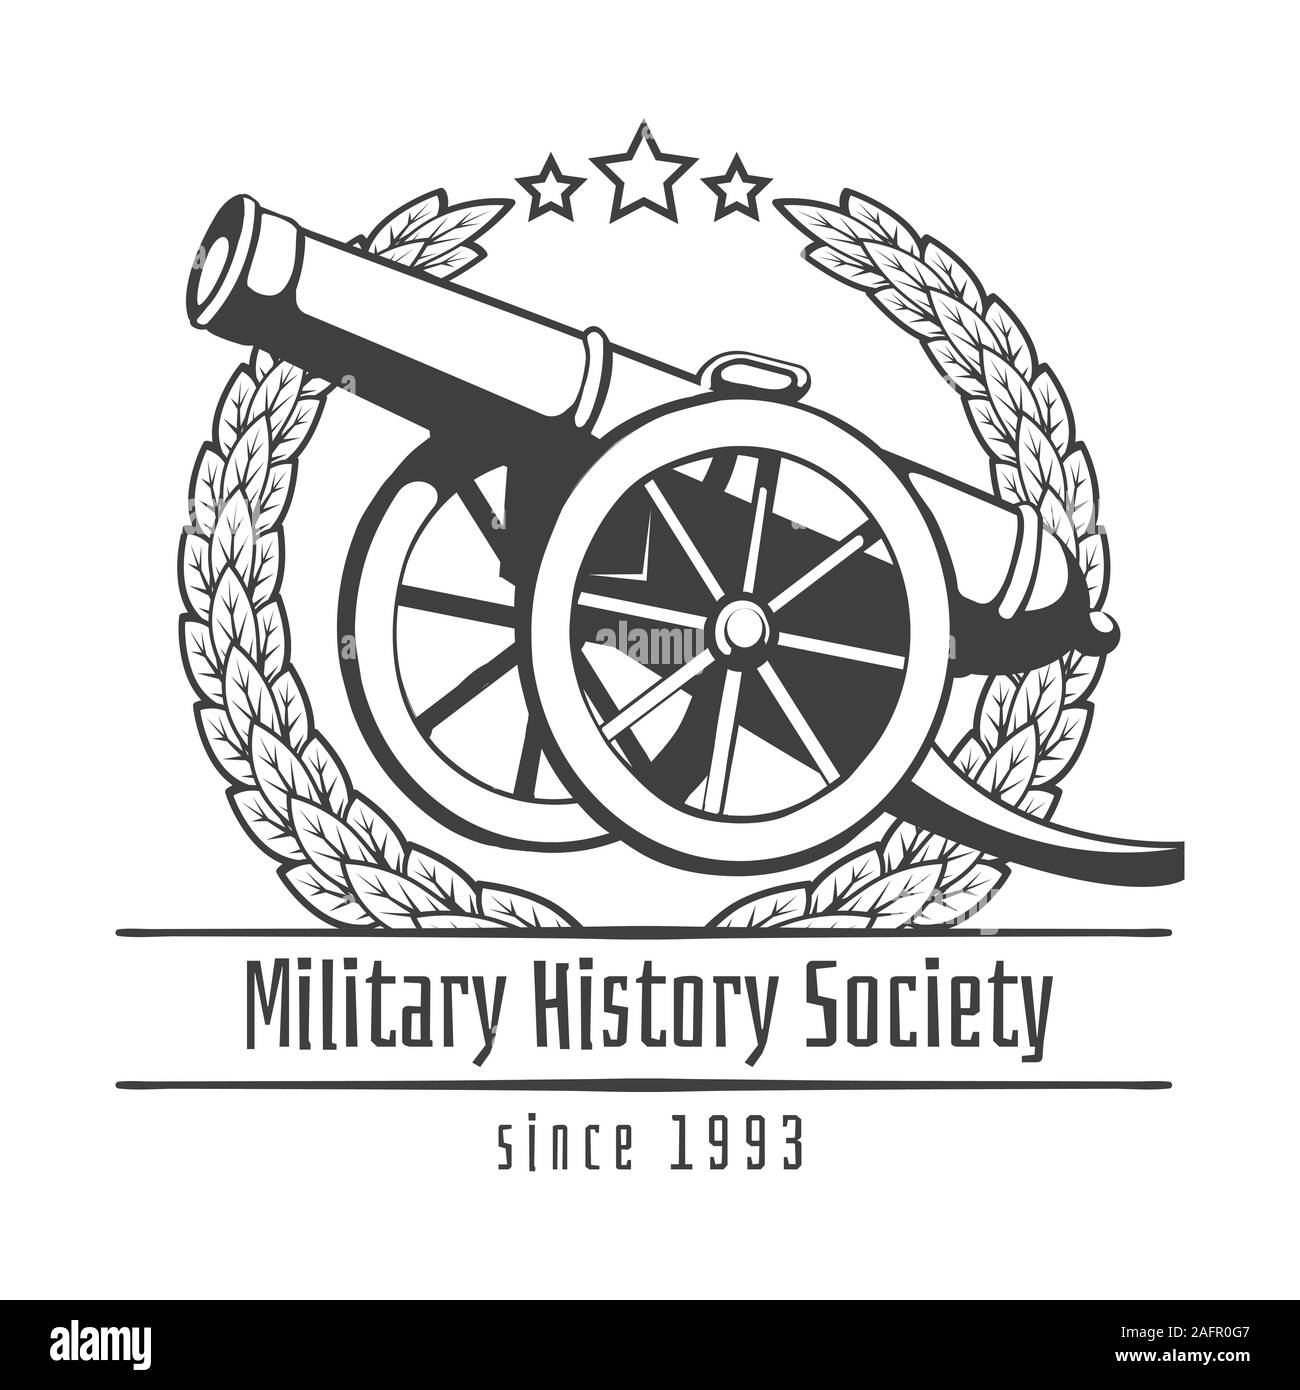 Military history society emblem Stock Vector